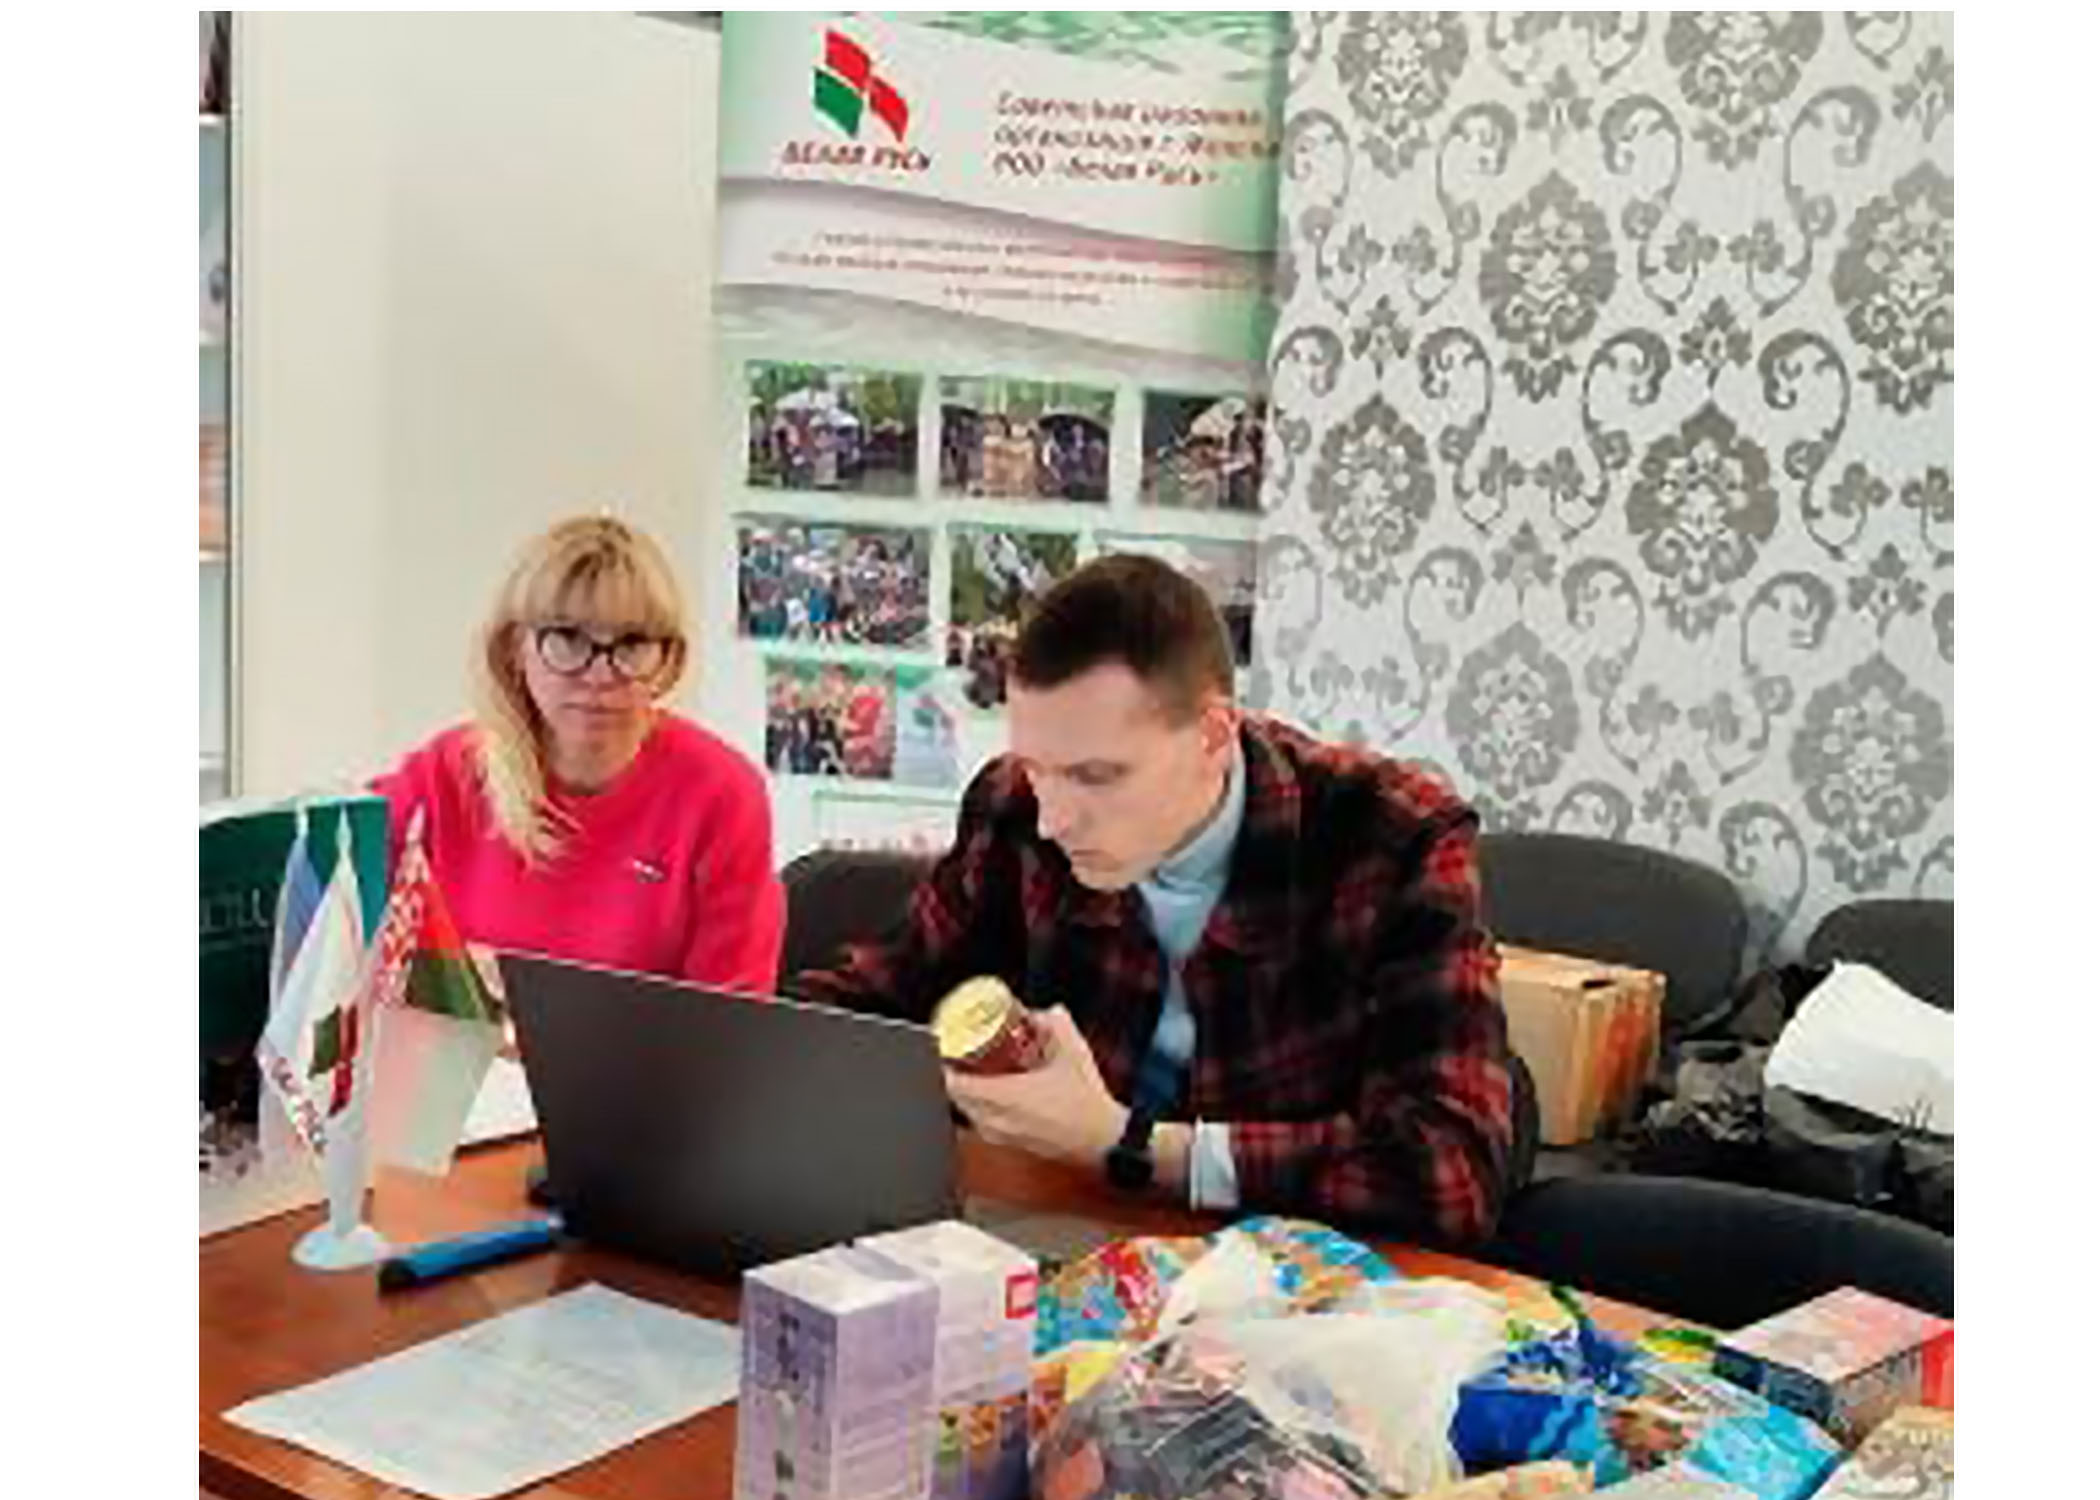 Педагоги и учащиеся учреждения образования поддержали инициативу Республиканского общественного объединения «Белая Русь» по сбору гуманитарной помощи для детей Донбасса.